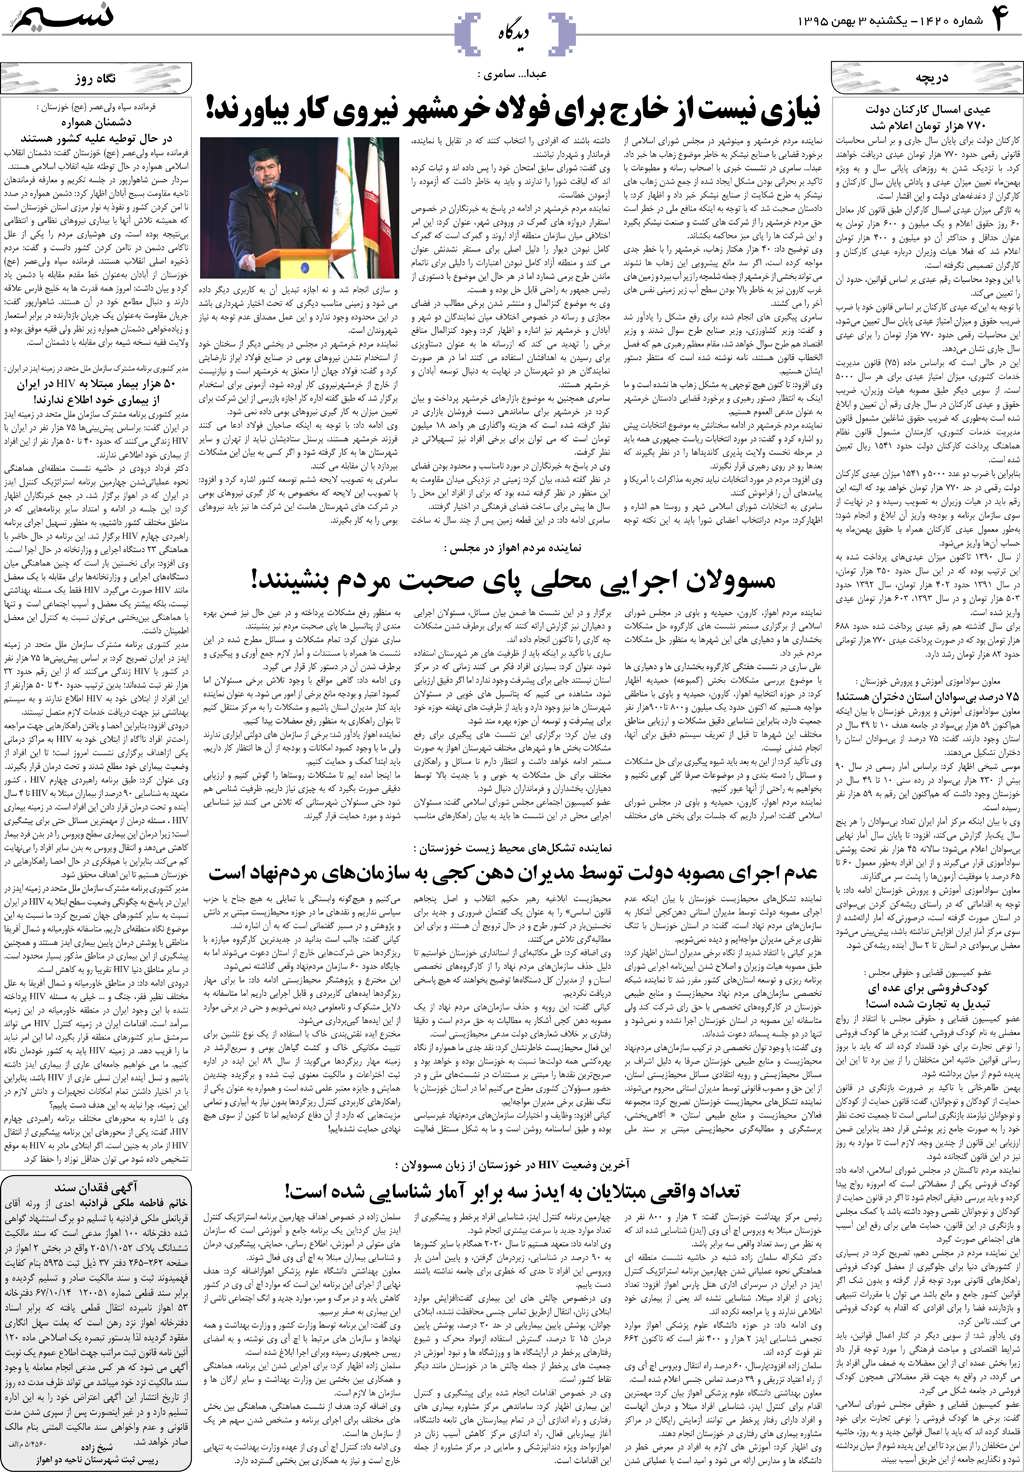 صفحه دیدگاه روزنامه نسیم شماره 1420